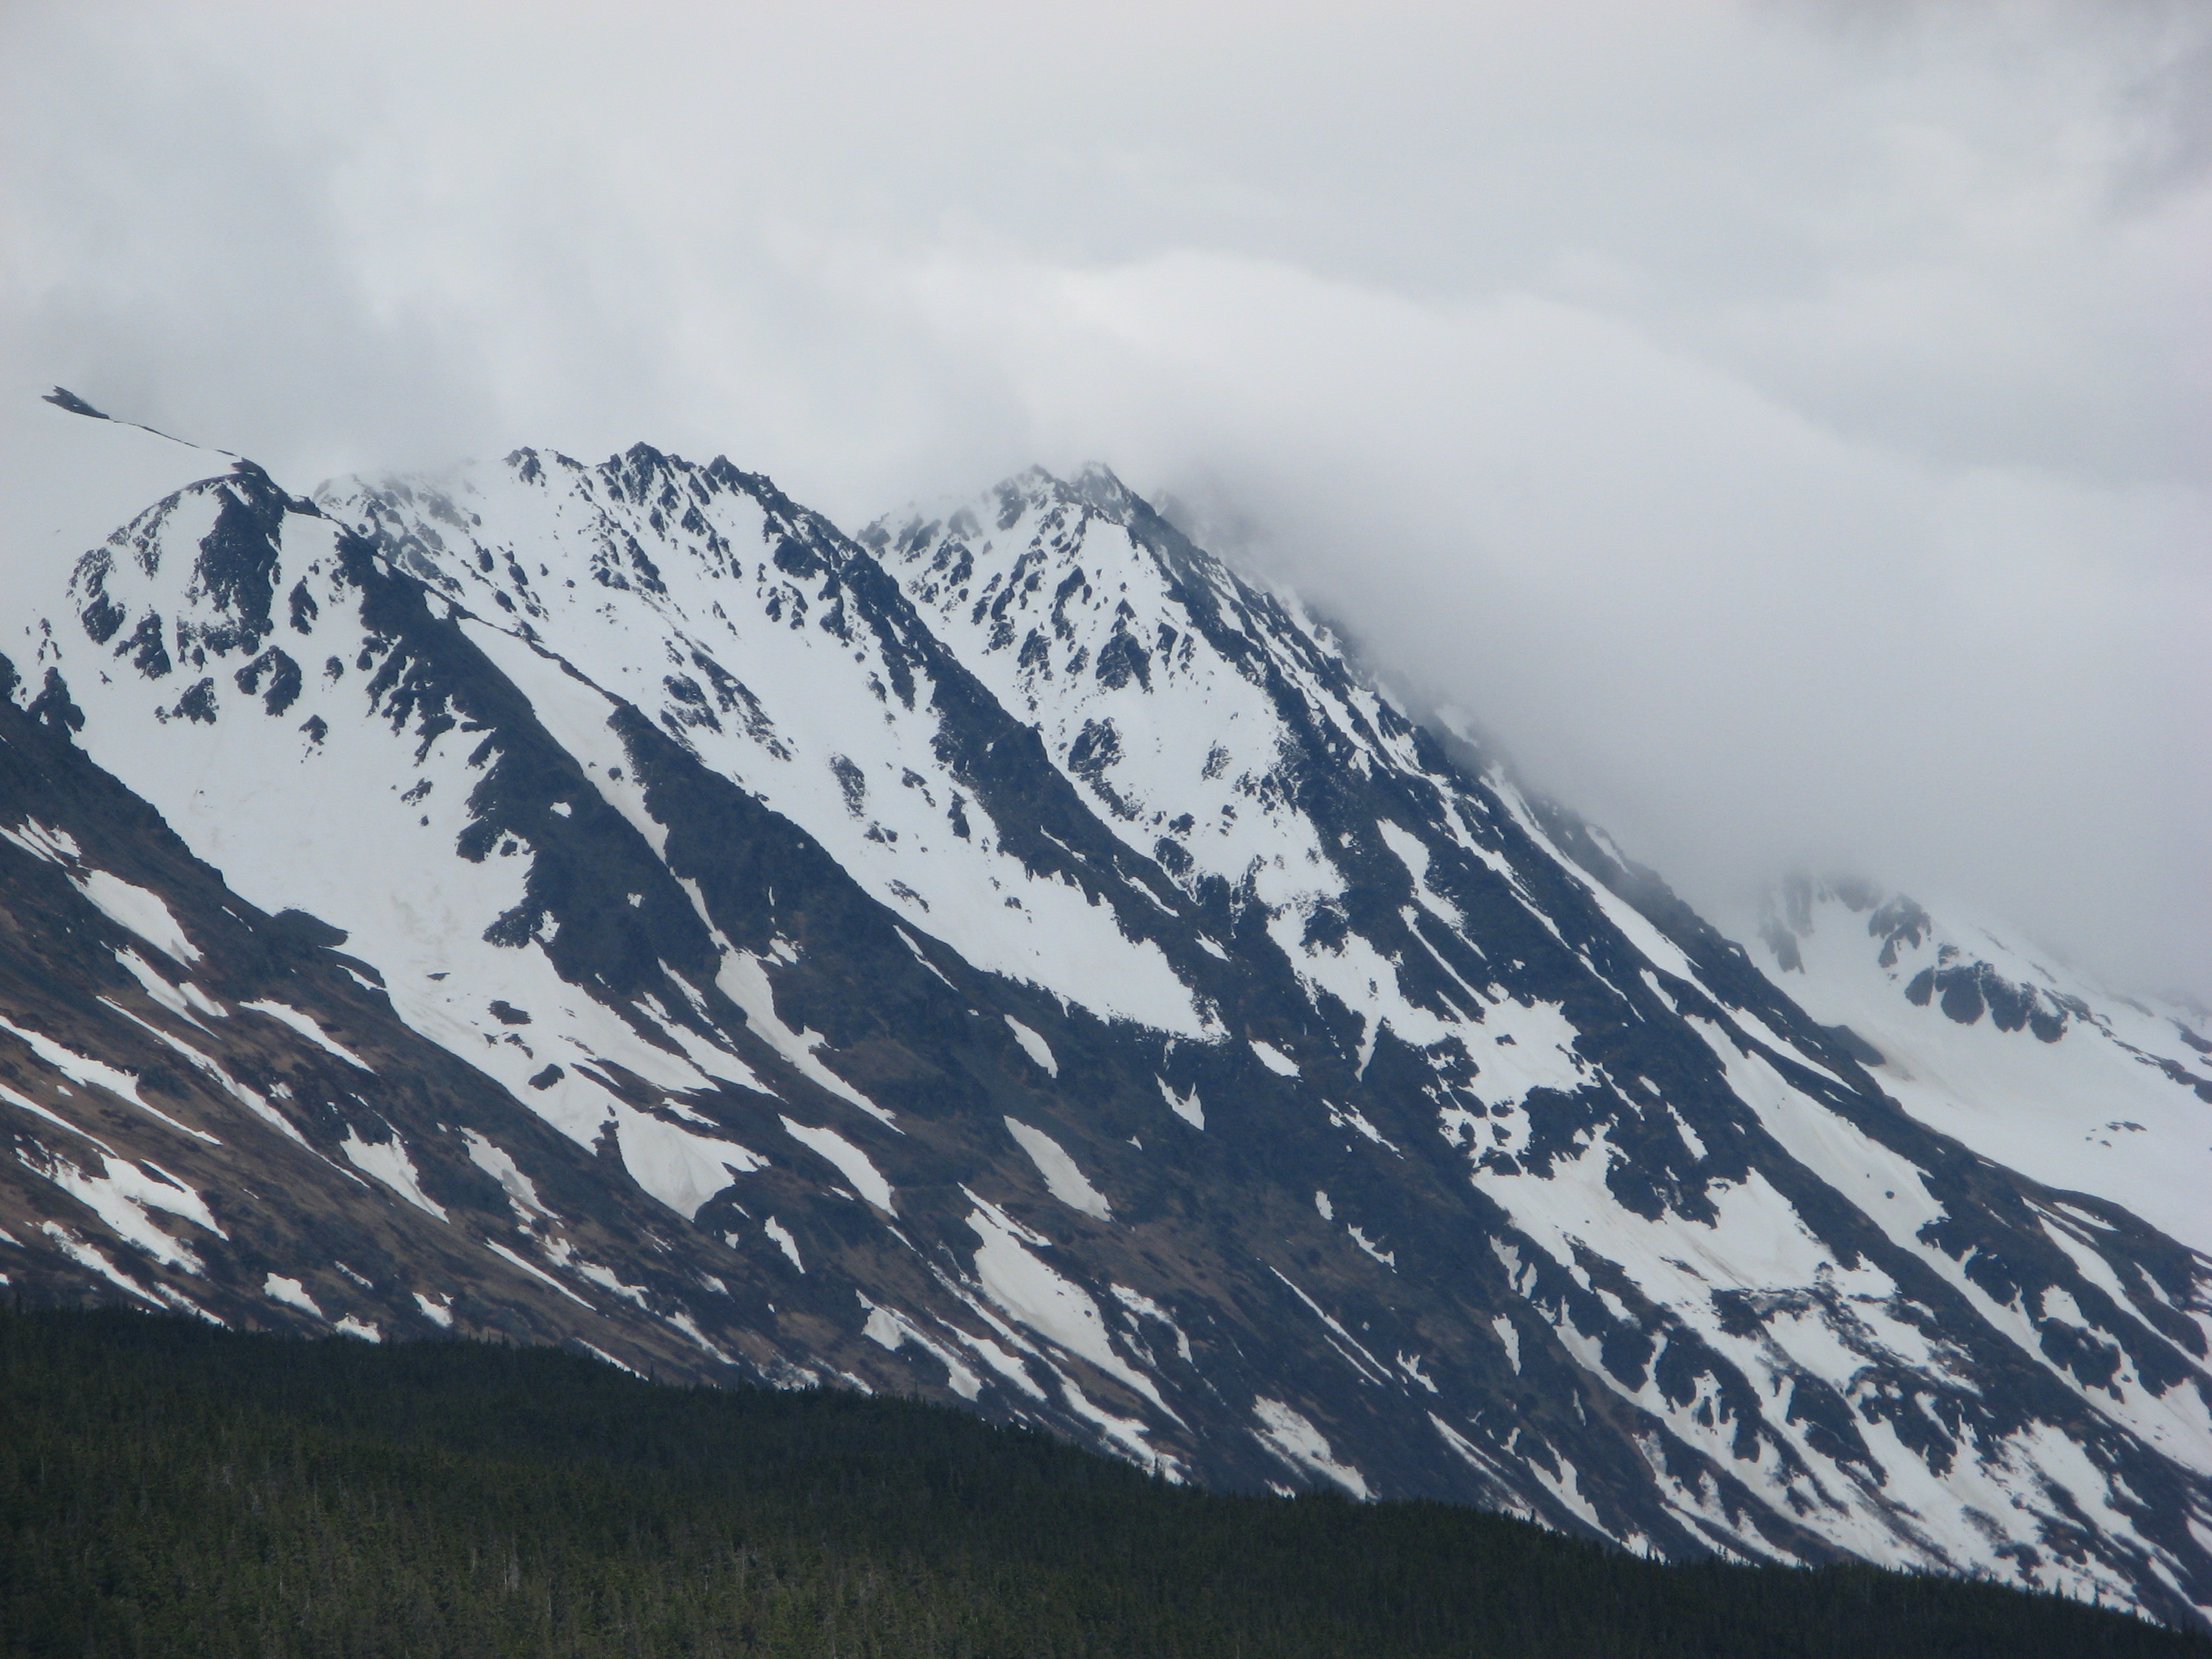 Mountains near Seward, Alaska.